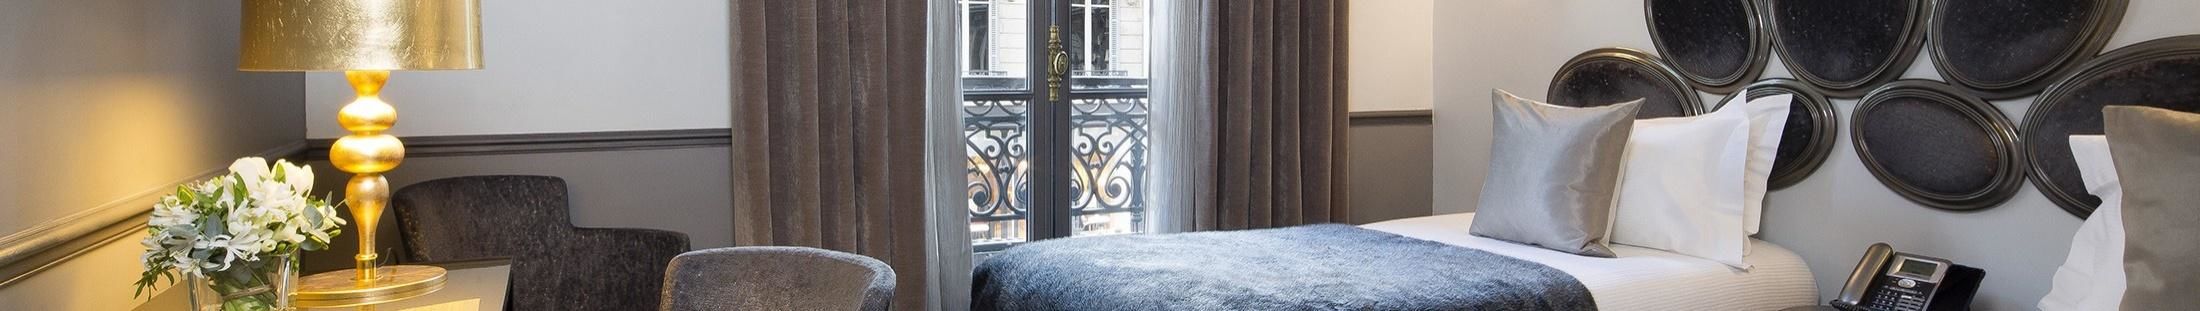 Hotel Lumen Paris Louvre - Room